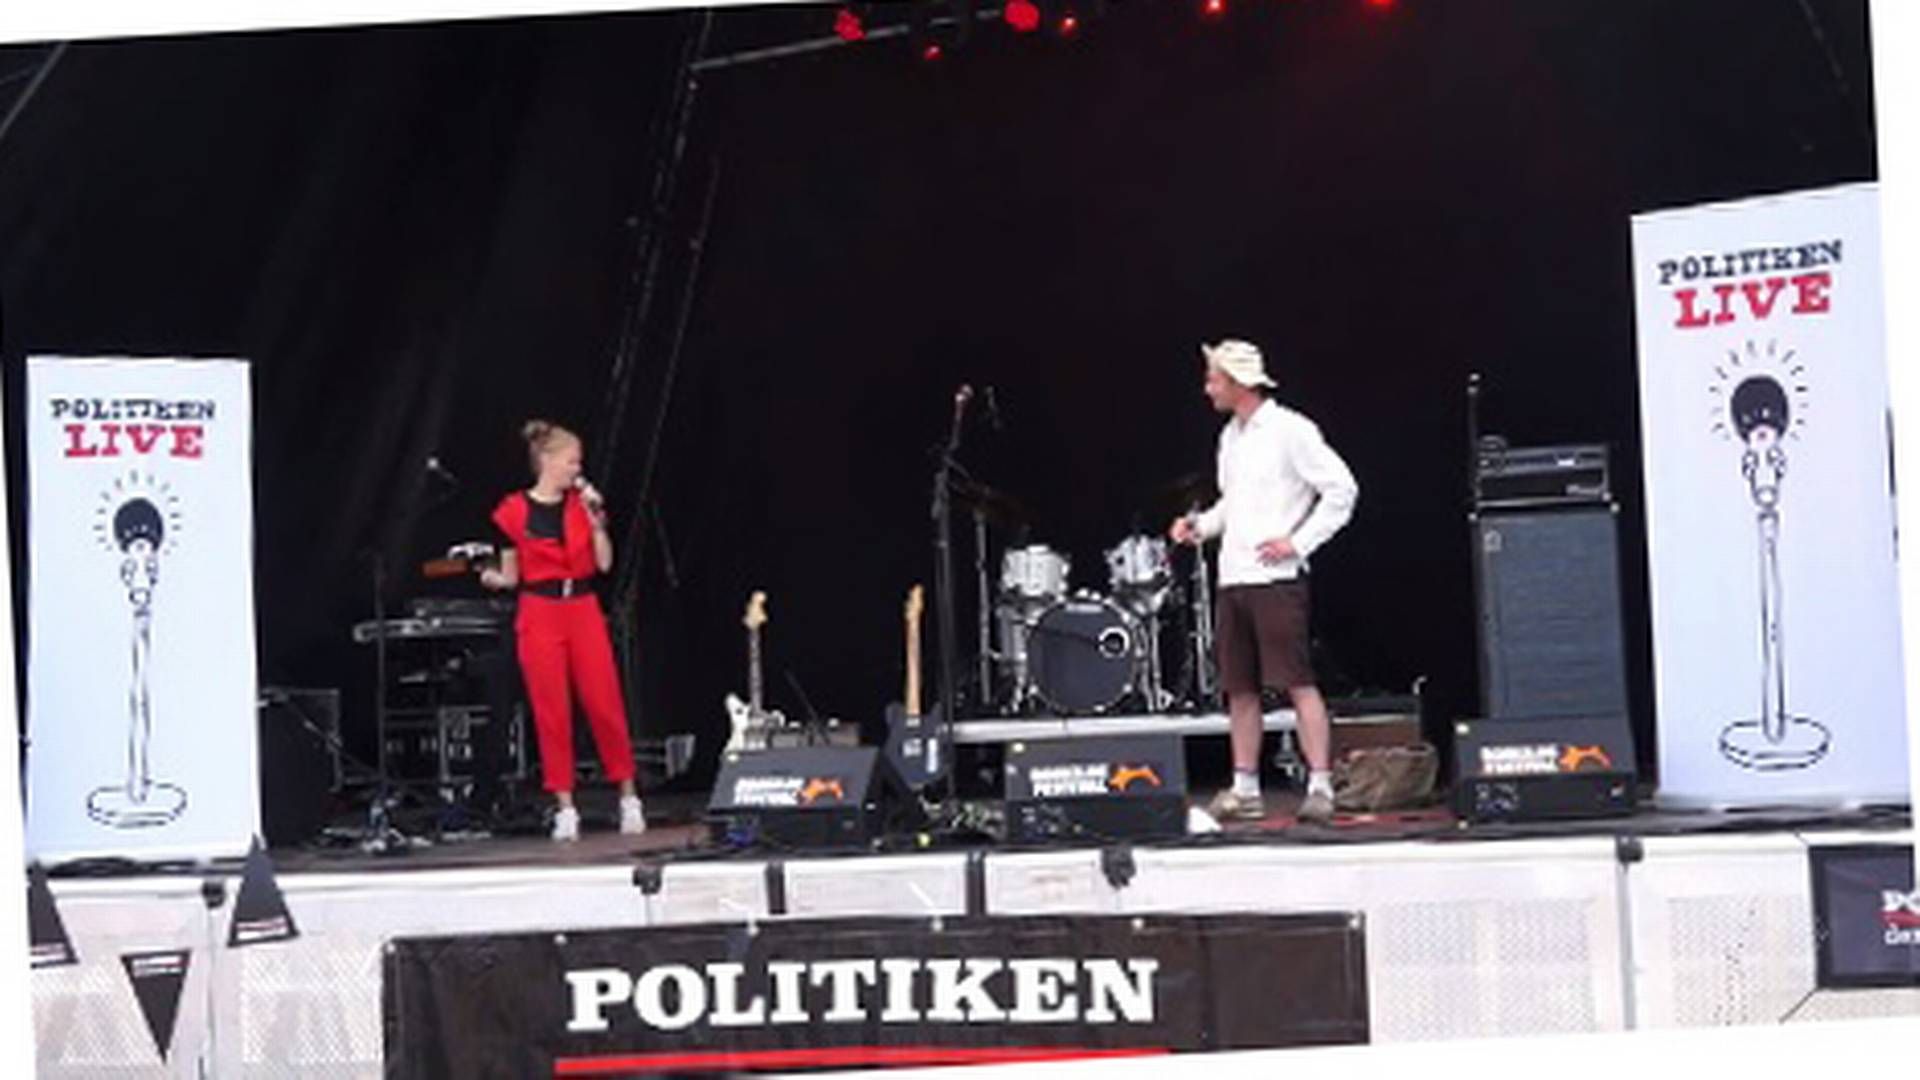 Foto: Screendump/Politiken Live